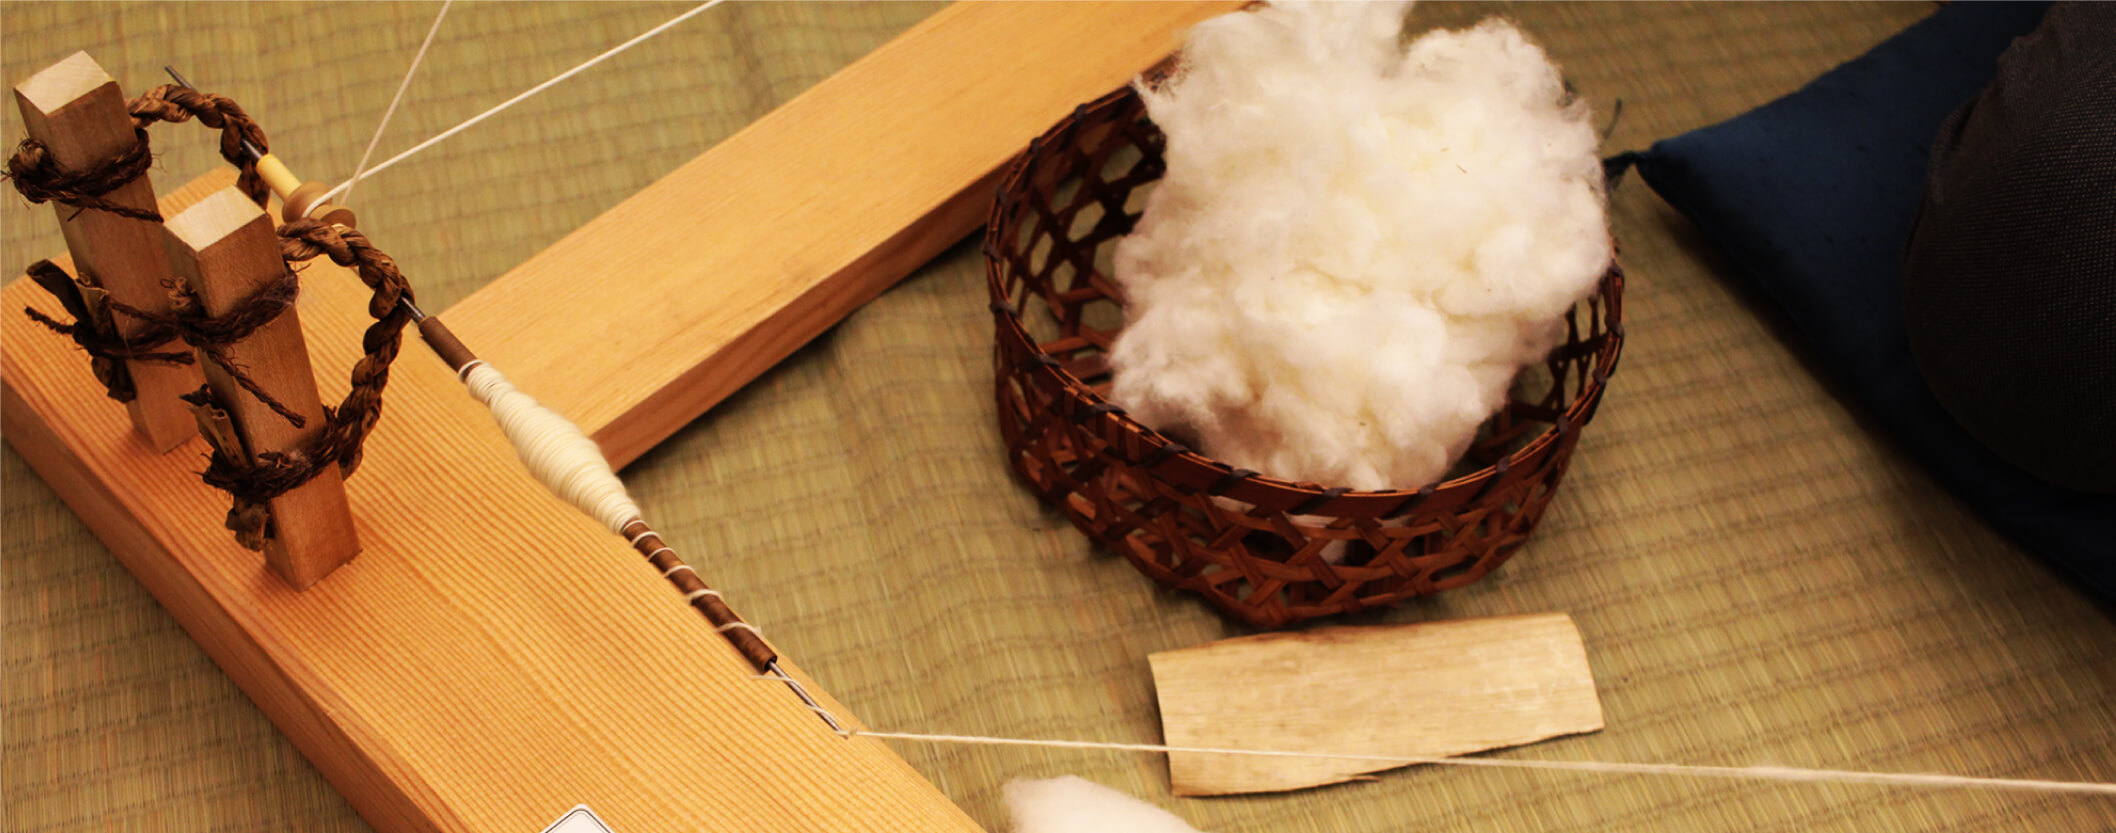 綿の道具体験